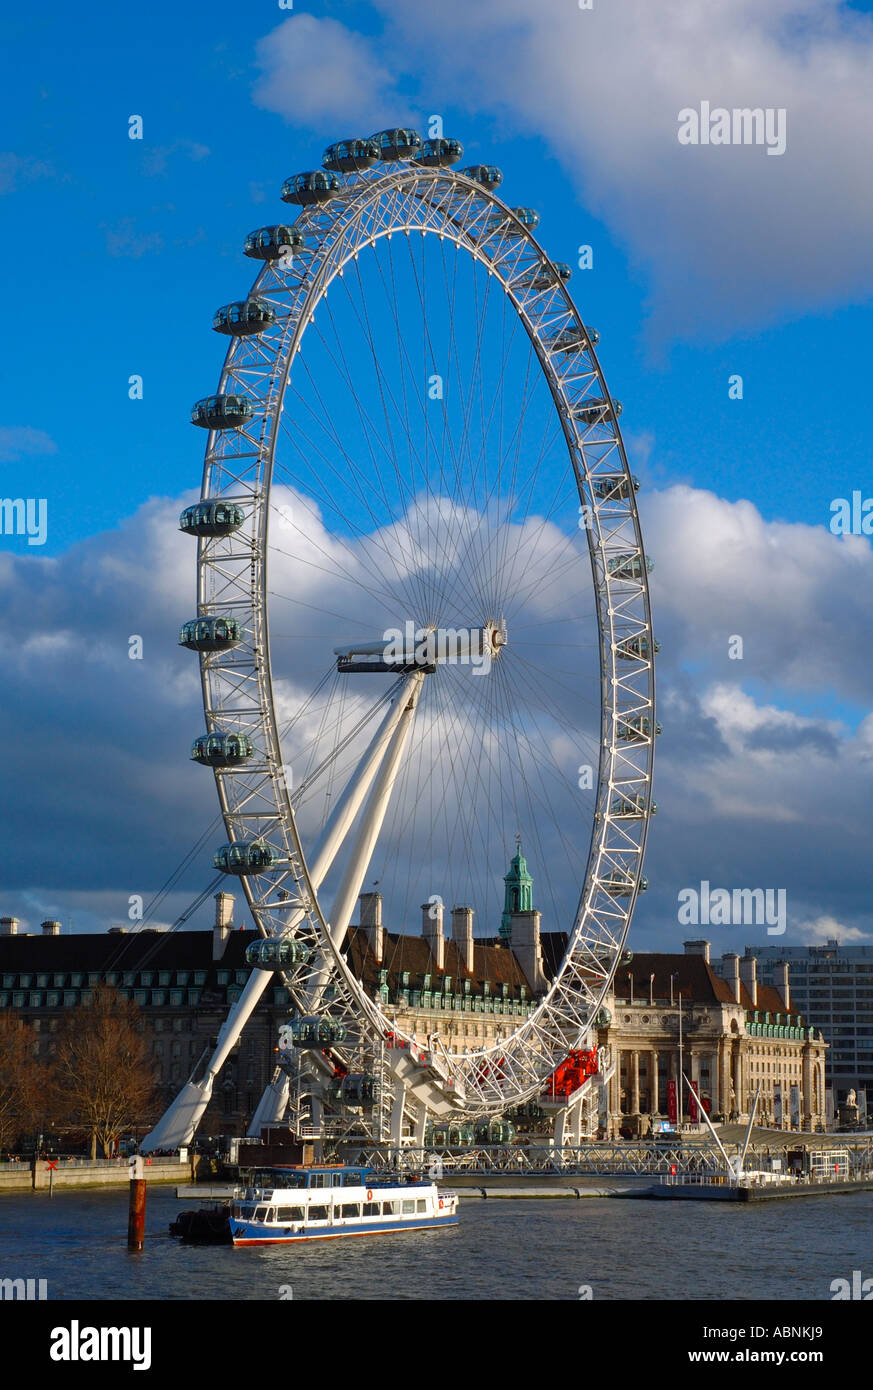 London Eye, Banque du Sud, de la rivière Thames, London, England, UK, FR. Banque D'Images